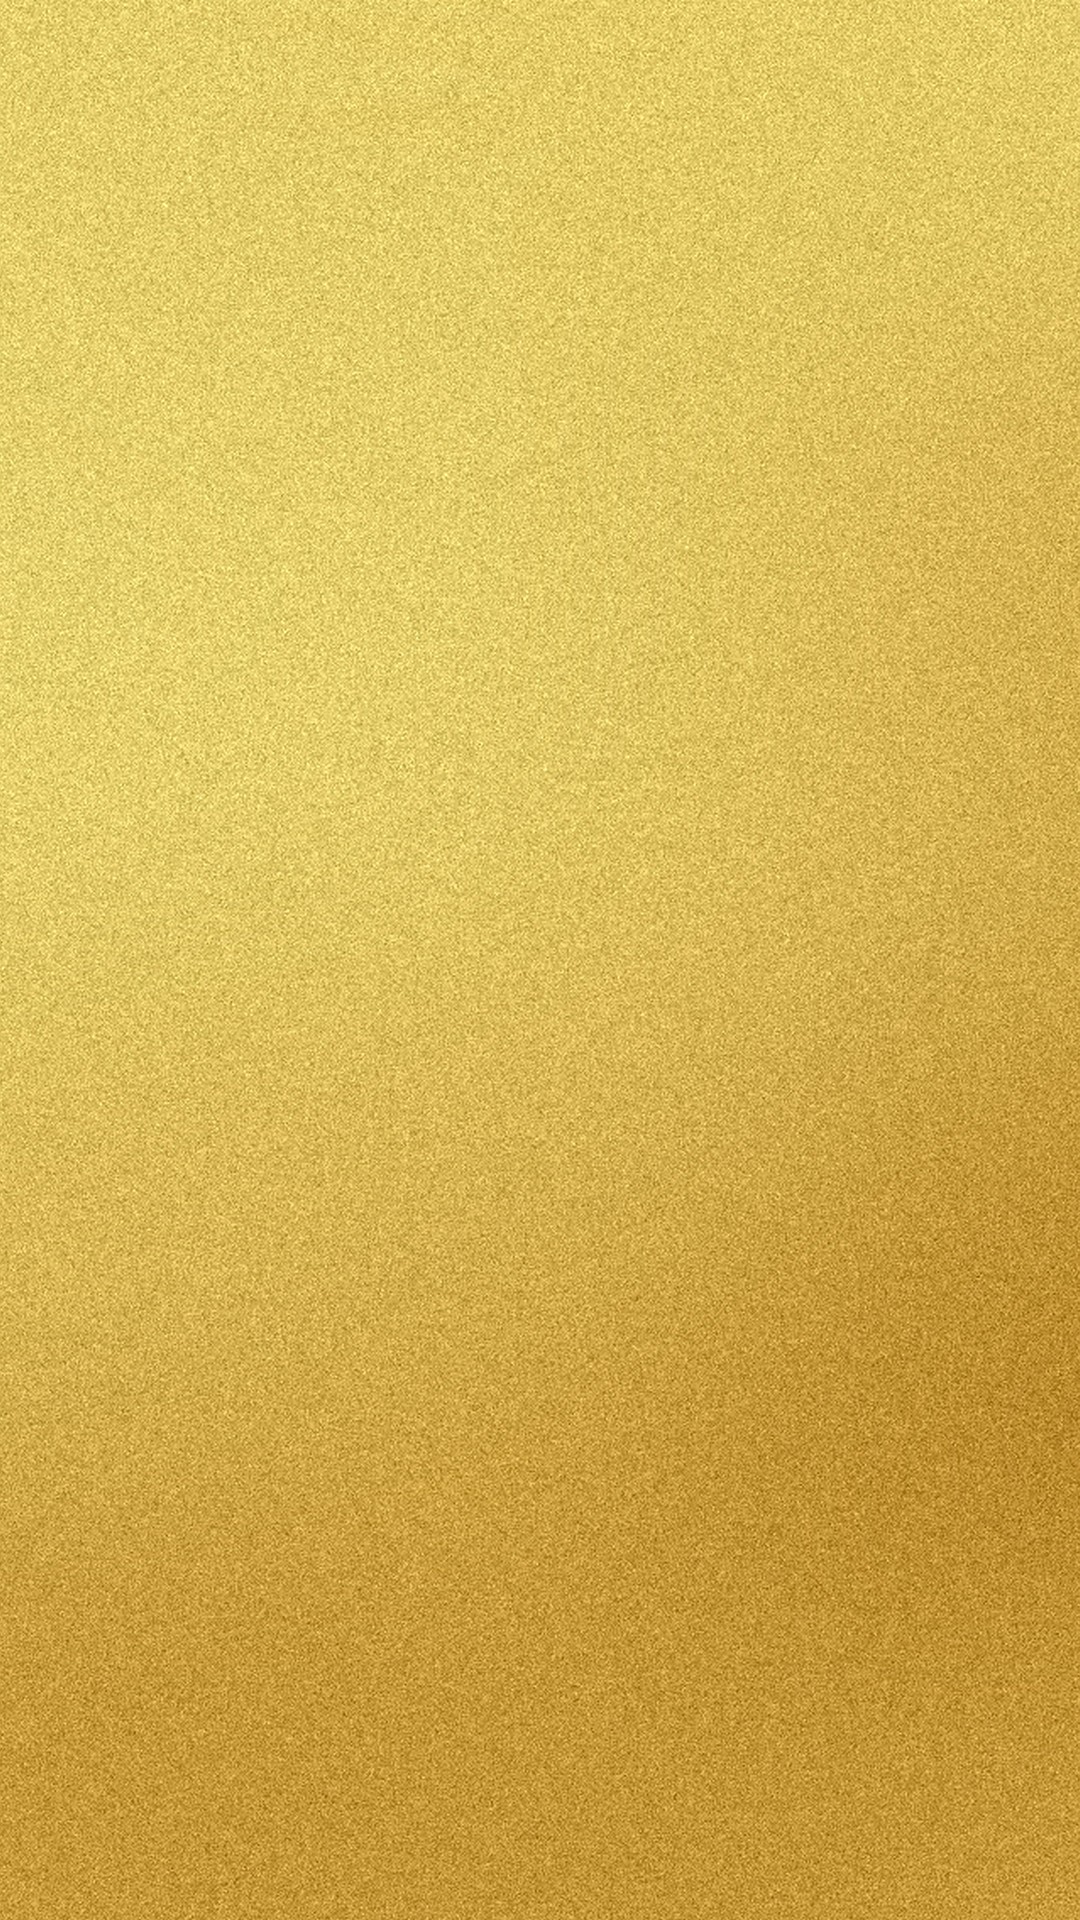 fond d'écran or iphone 5s,jaune,beige